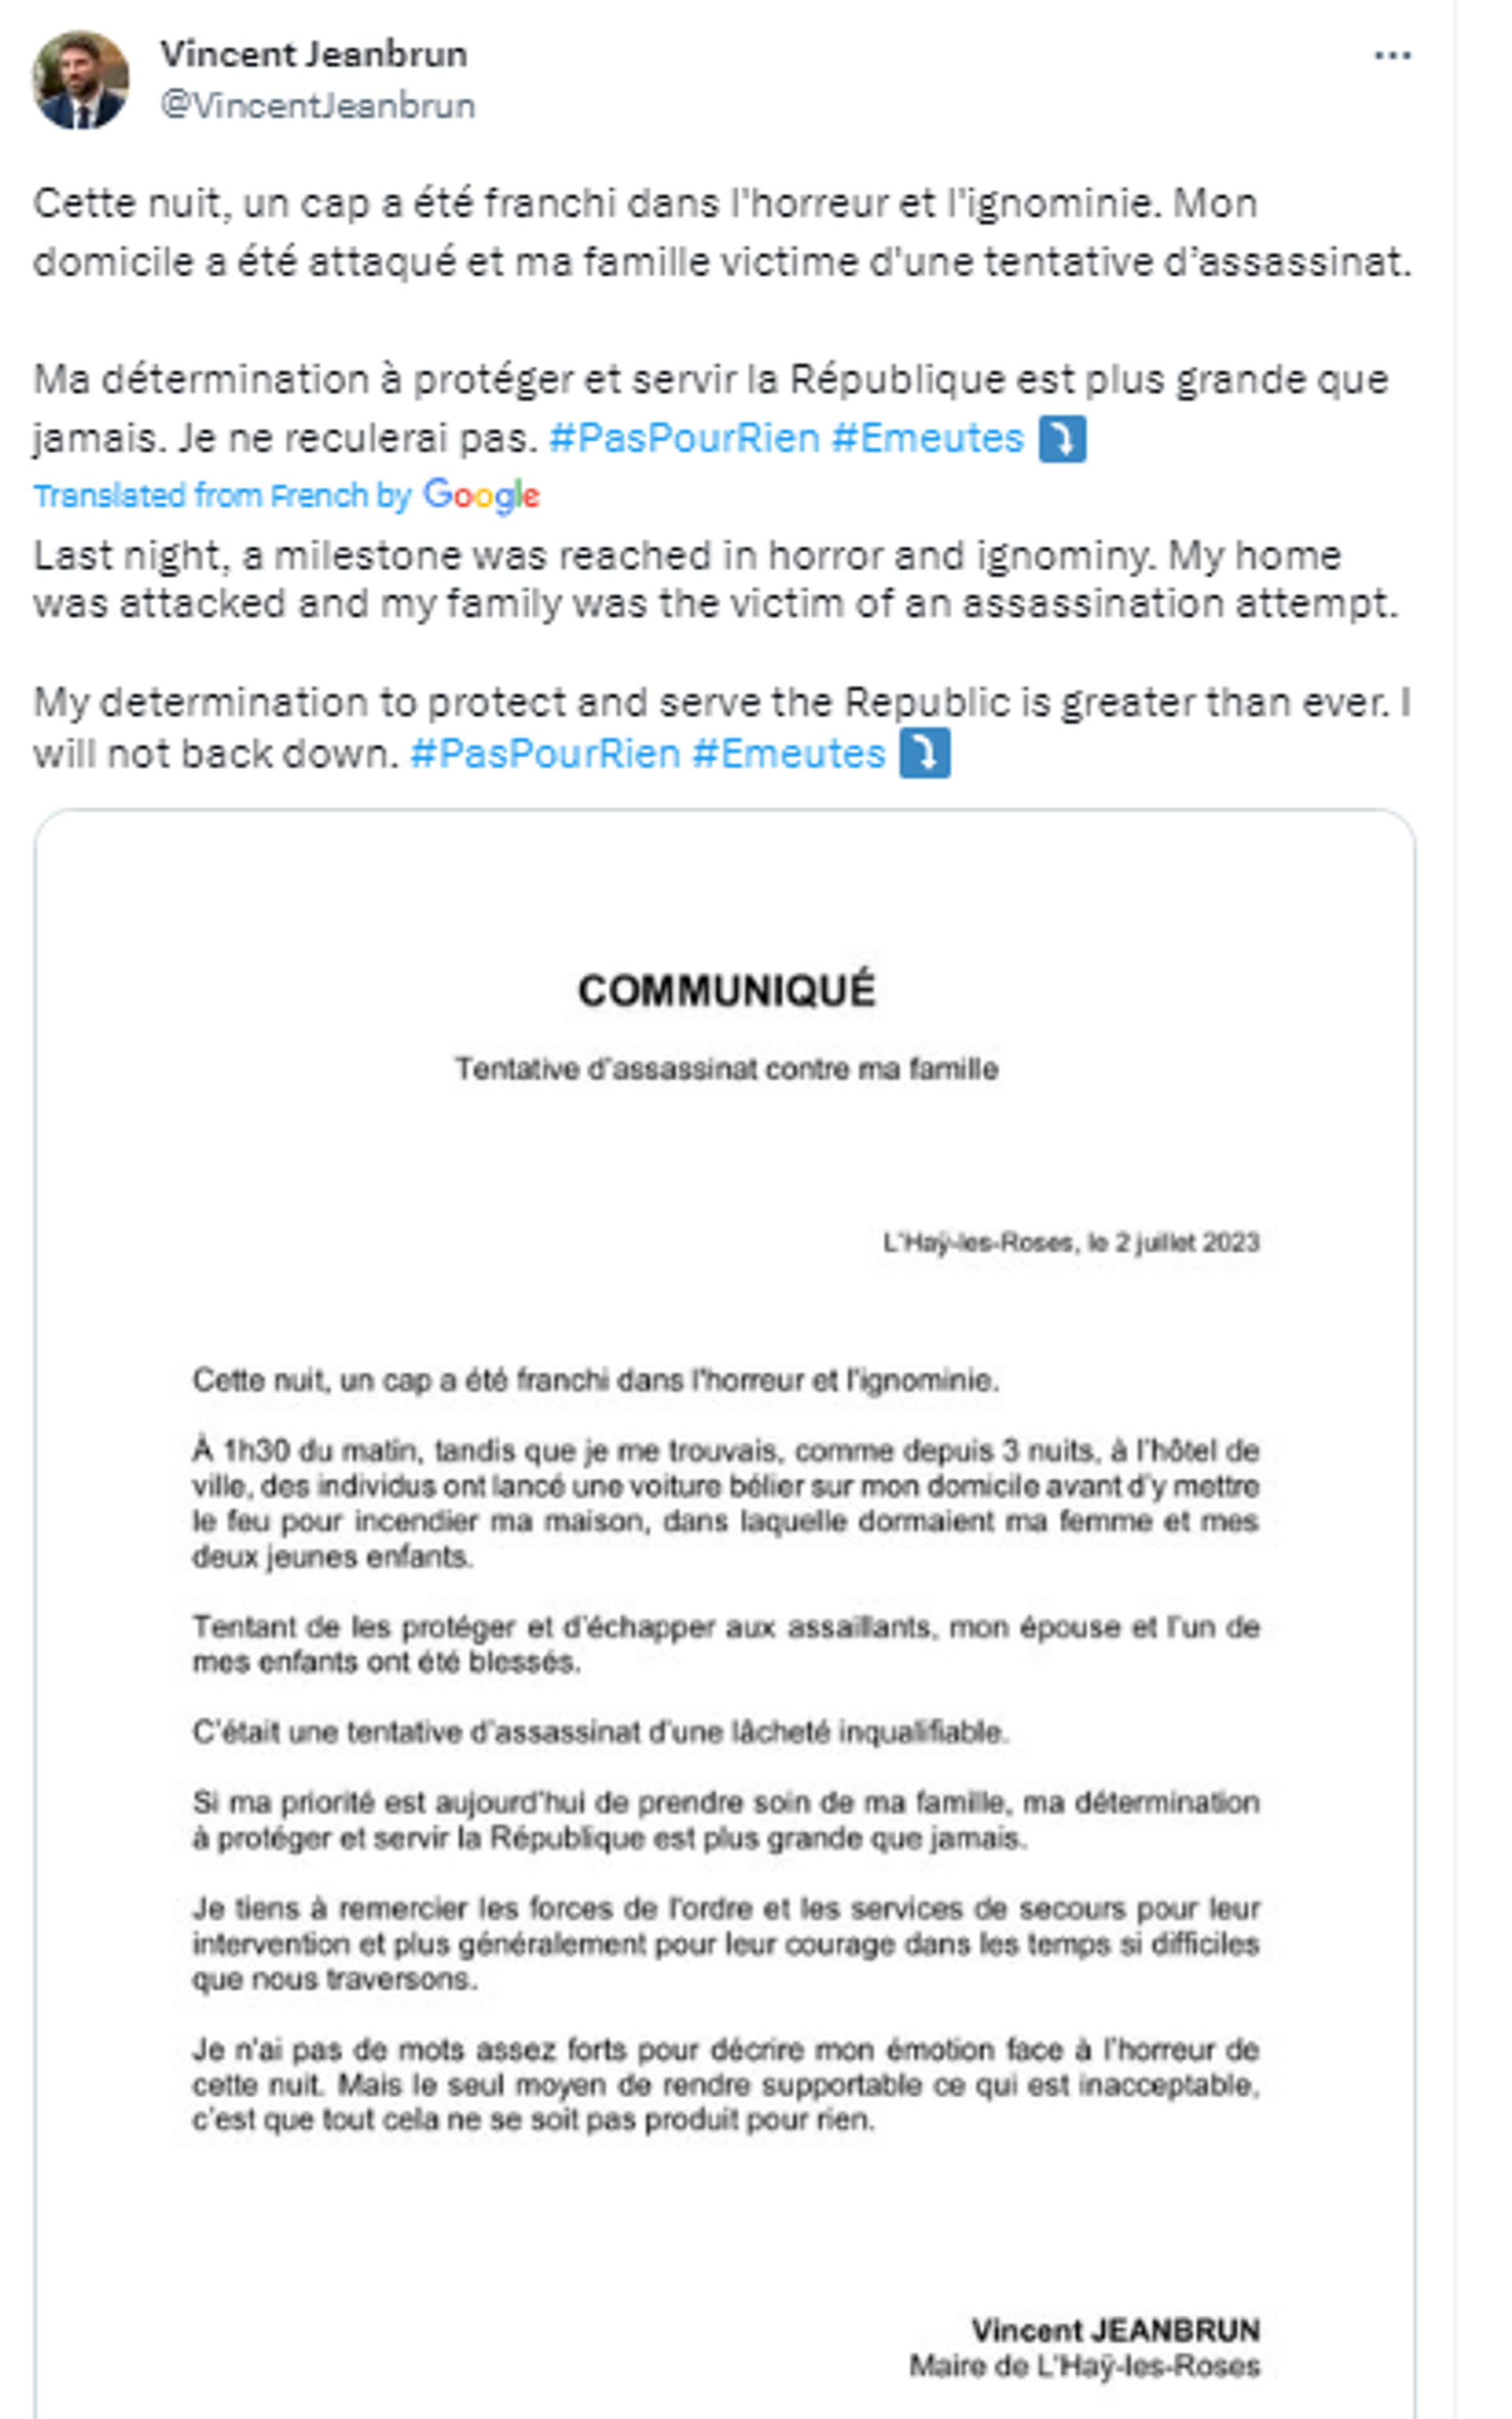 Screenshot of Twitter post by Vincent Jeanbrun, Mayor of L'Haÿ-les-Roses. - Sputnik Africa, 1920, 02.07.2023